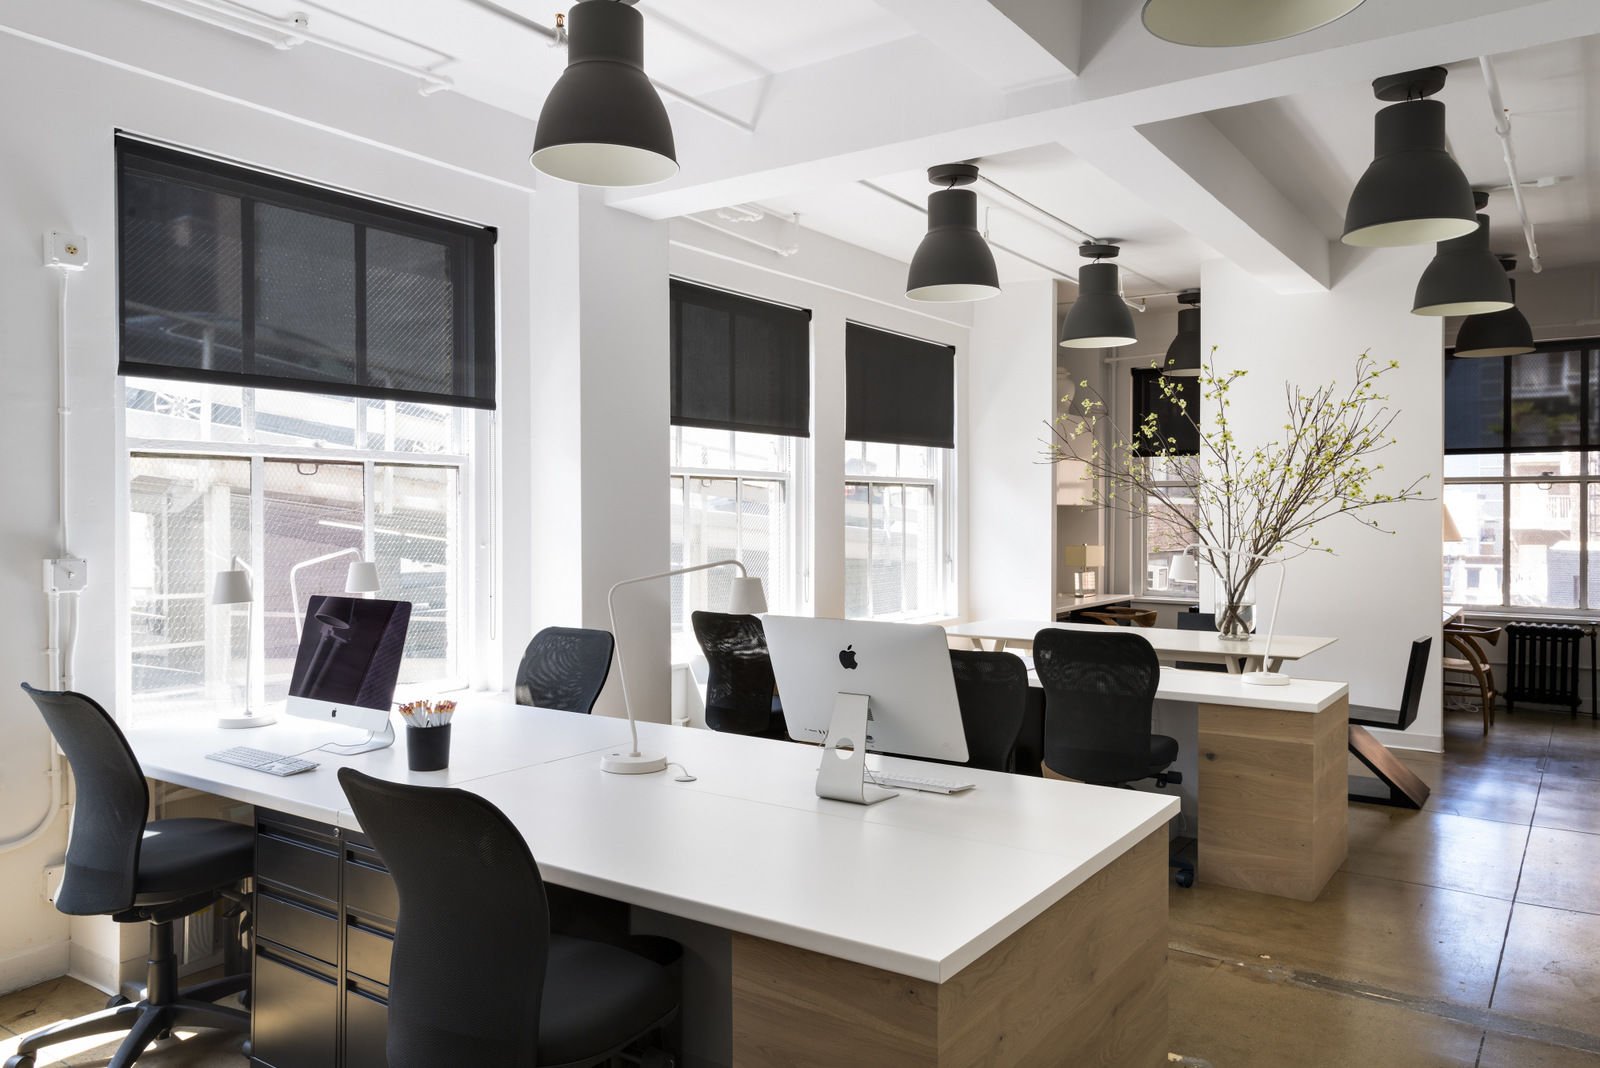 Thiết kế nội thất văn phòng nhỏ đẹp chuyên nghiệp nhằm mang đến một không gian làm việc tối ưu